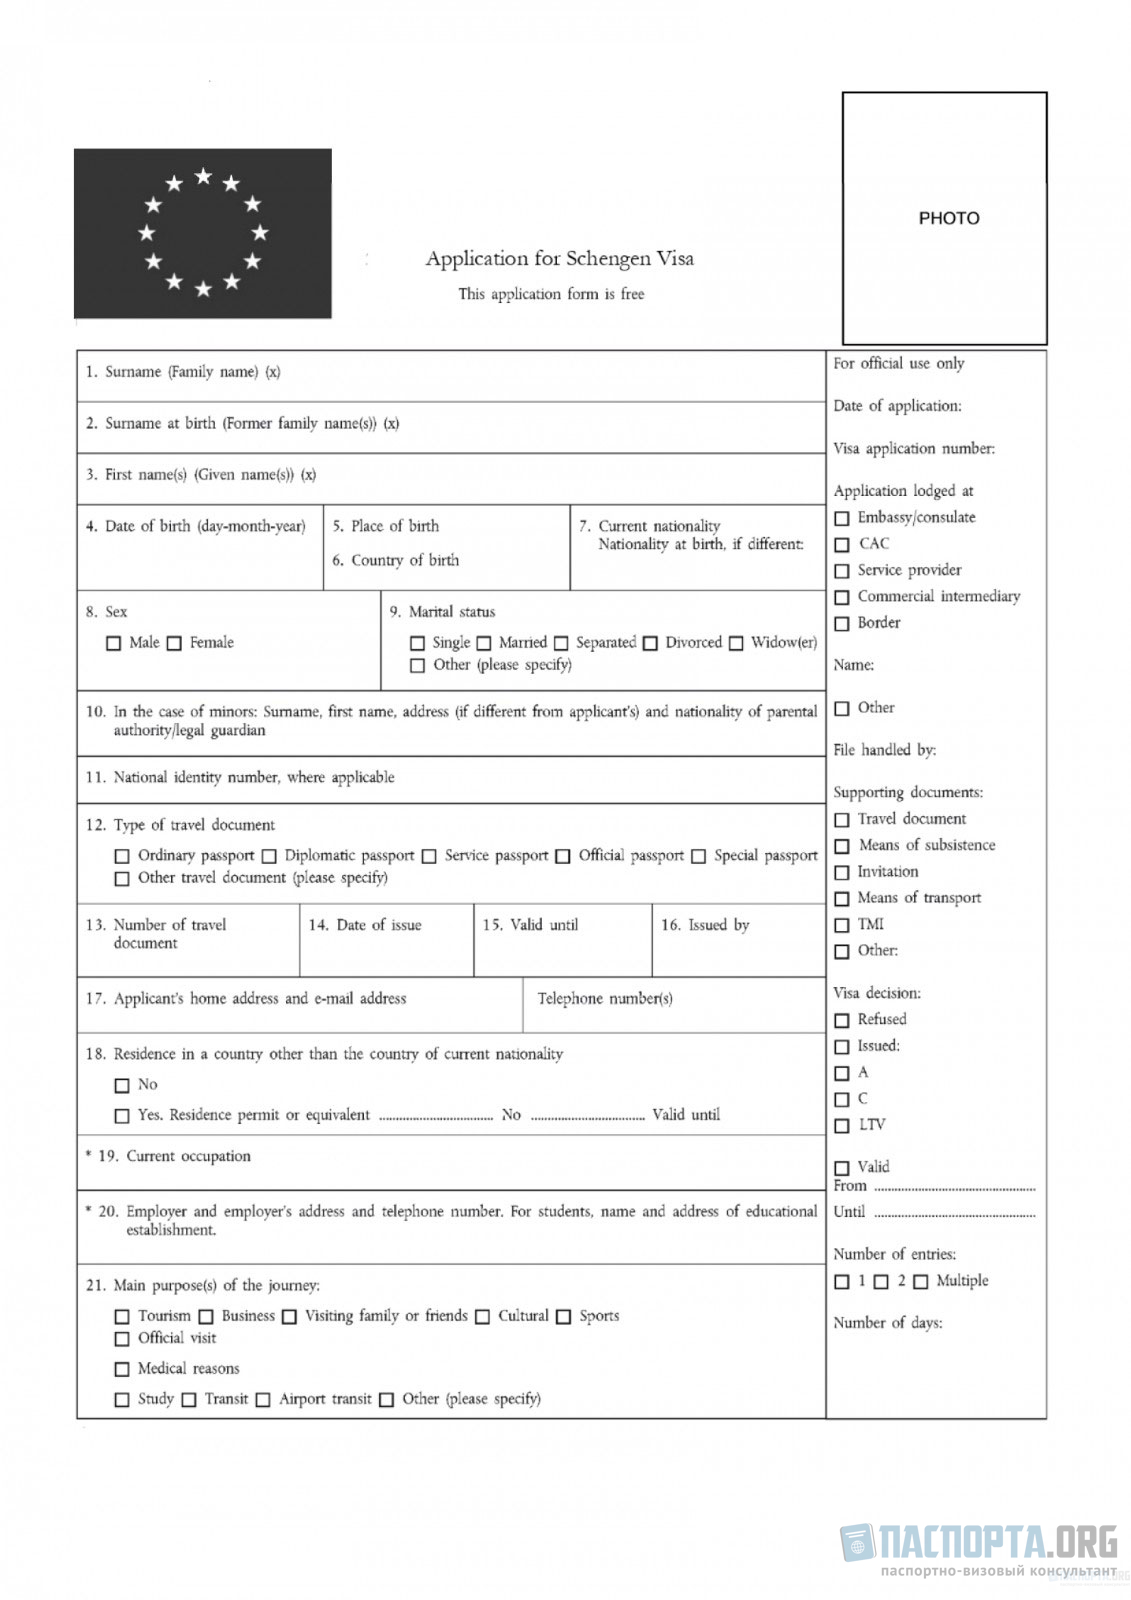 Анкета на визу во Францию. Бланк для заполнения анкеты на подачу визы.